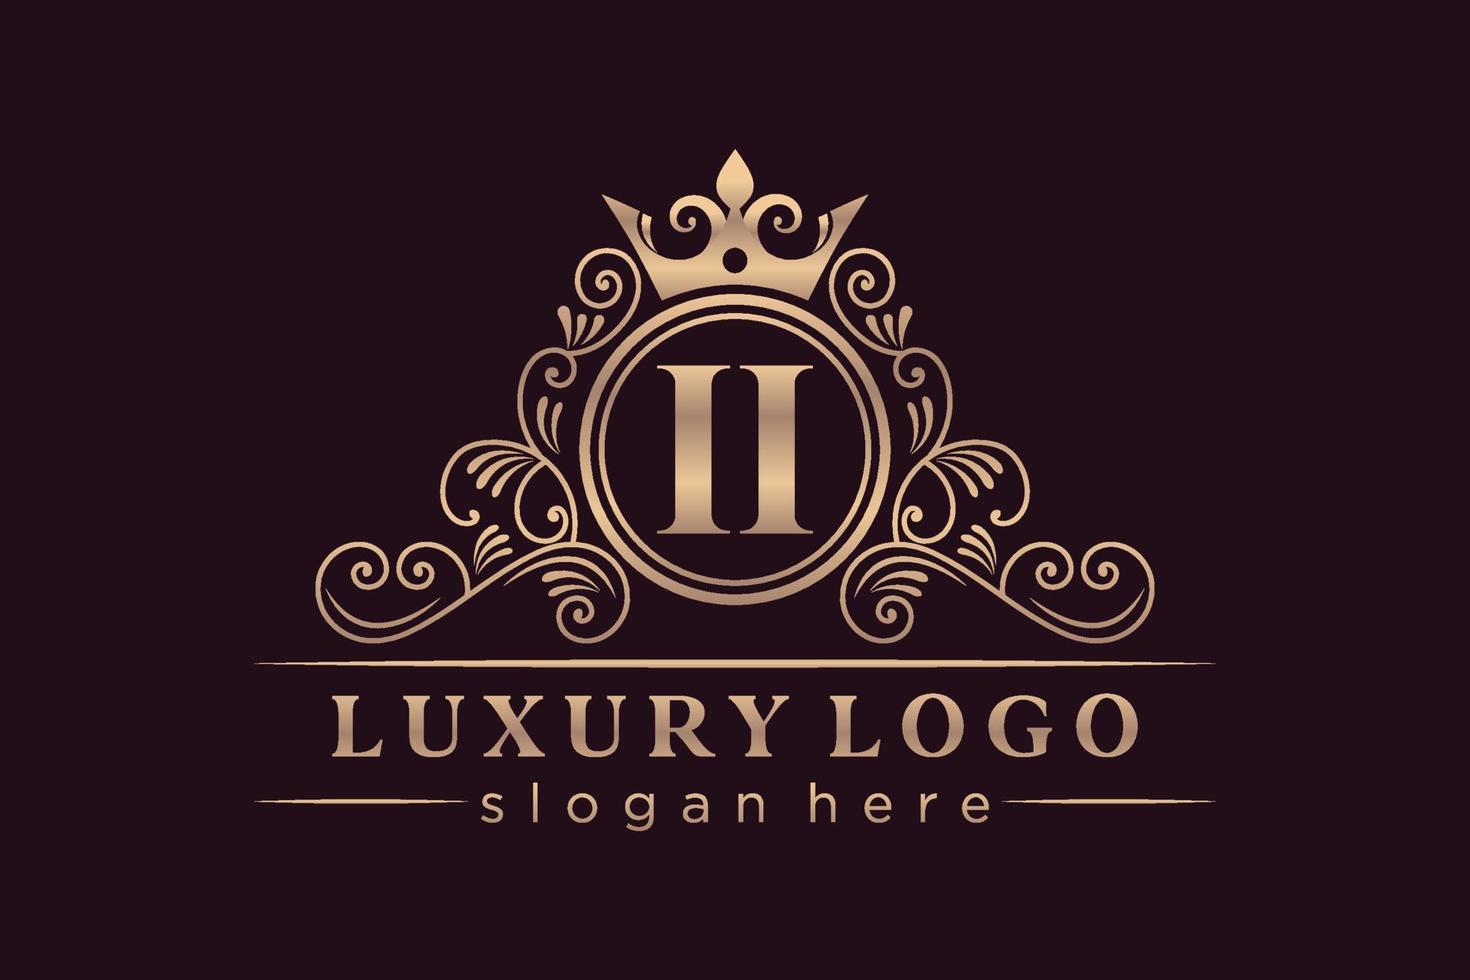 II Initial Letter Gold calligraphic feminine floral hand drawn heraldic monogram antique vintage style luxury logo design Premium Vector